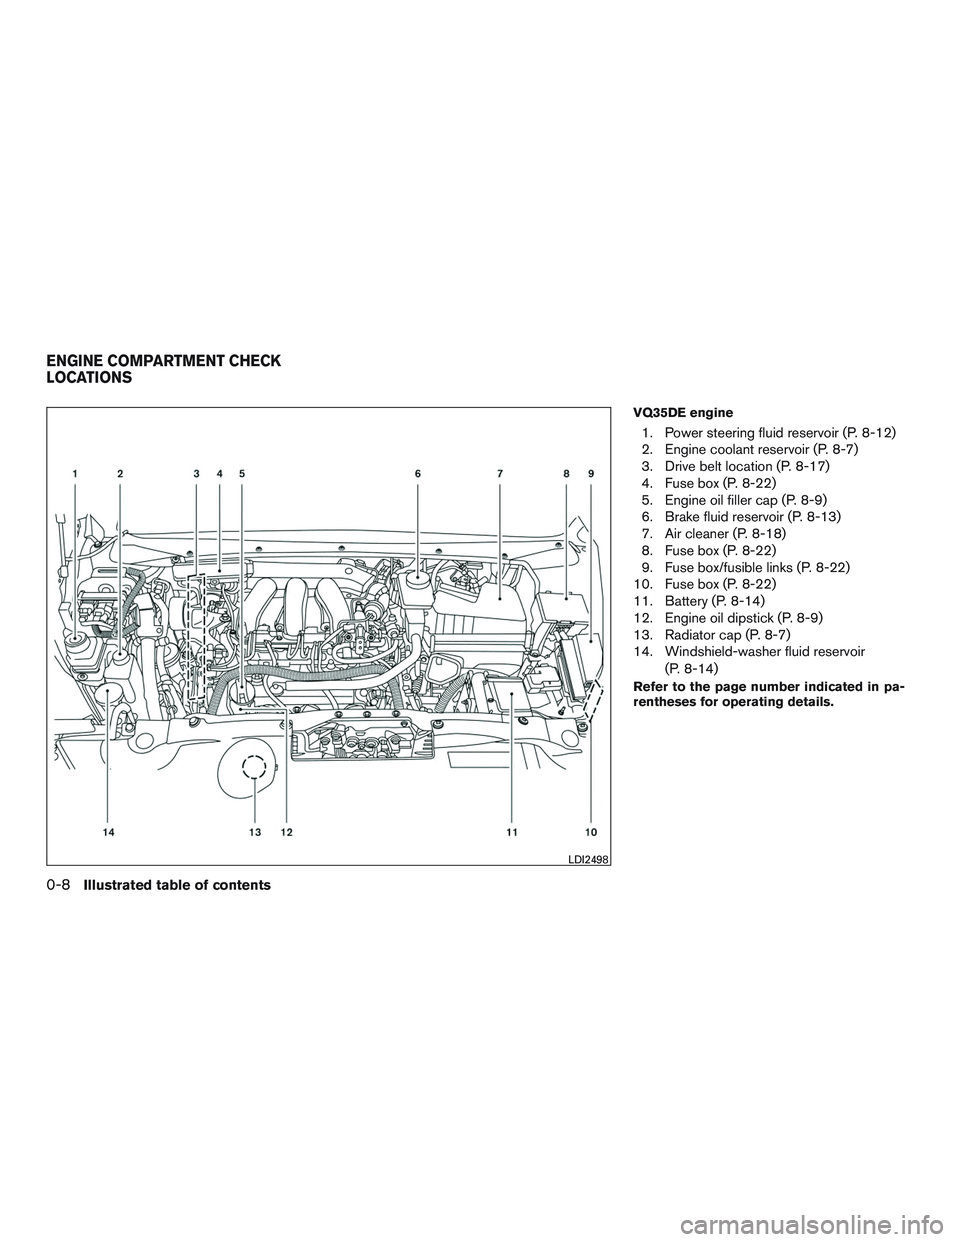 INFINITI QX60 2015  Owners Manual VQ35DE engine
1. Power steering fluid reservoir (P. 8-12)
2. Engine coolant reservoir (P. 8-7)
3. Drive belt location (P. 8-17)
4. Fuse box (P. 8-22)
5. Engine oil filler cap (P. 8-9)
6. Brake fluid r